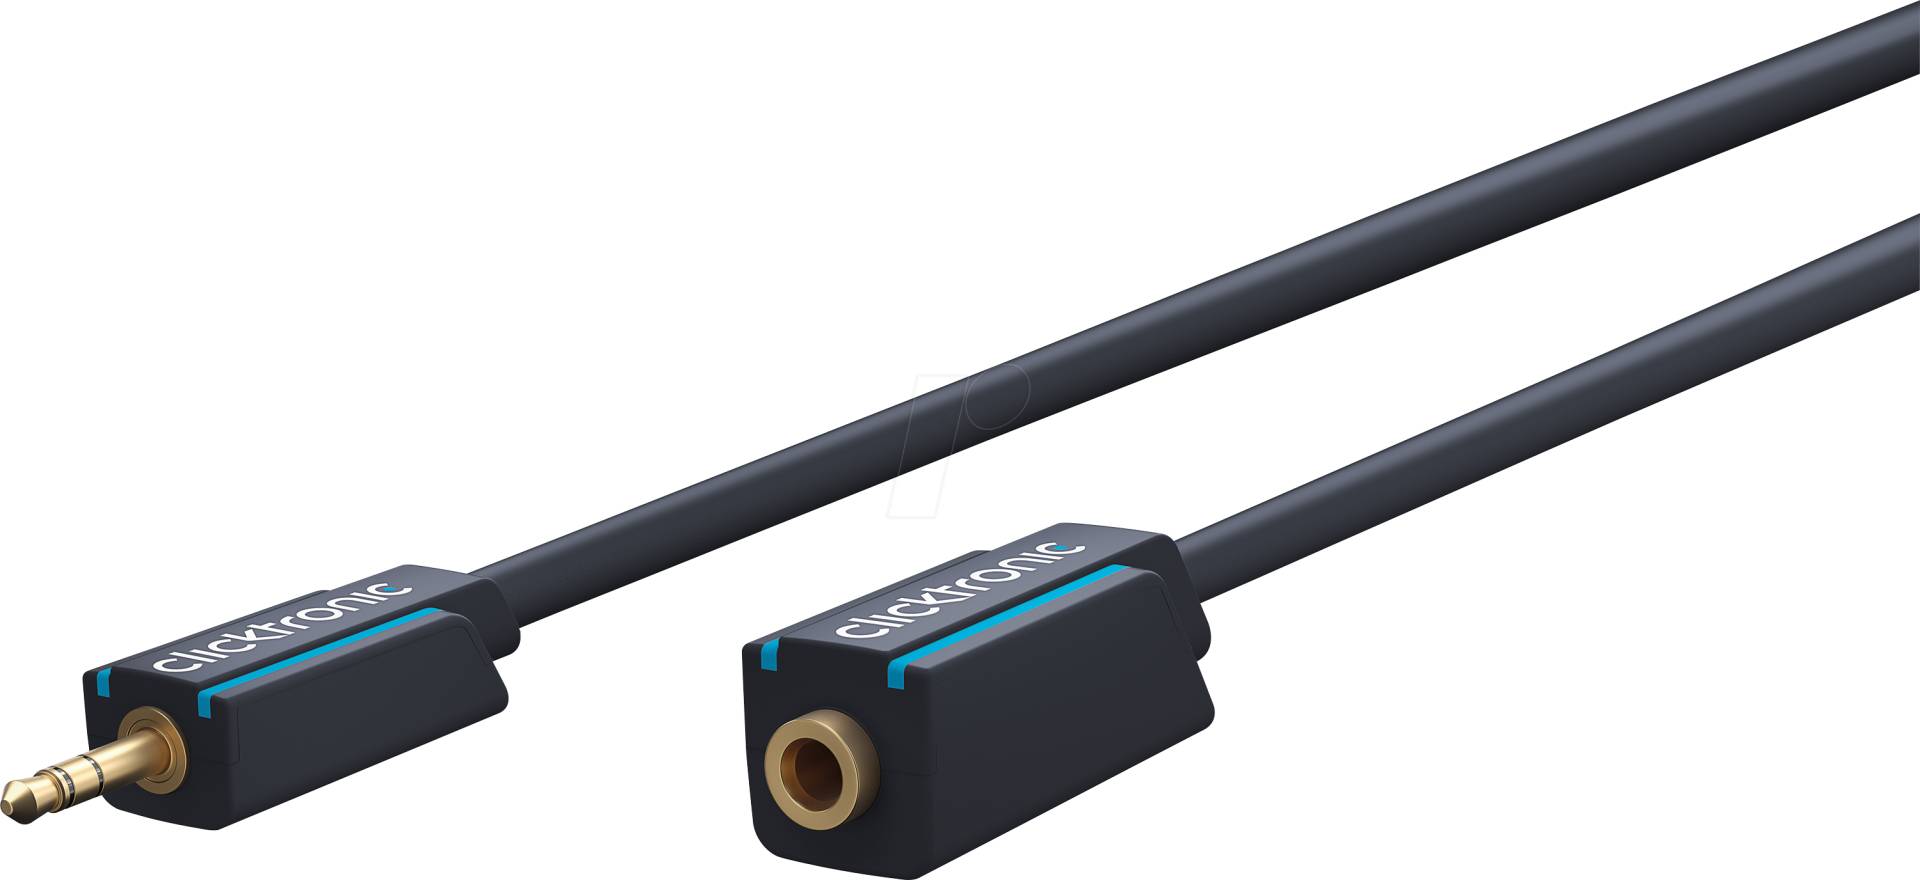 CLICK 70486 - Audio Kabel, 3,5 mm Klinkenkabel Verlängerung 1,5 m von CLICKTRONIC